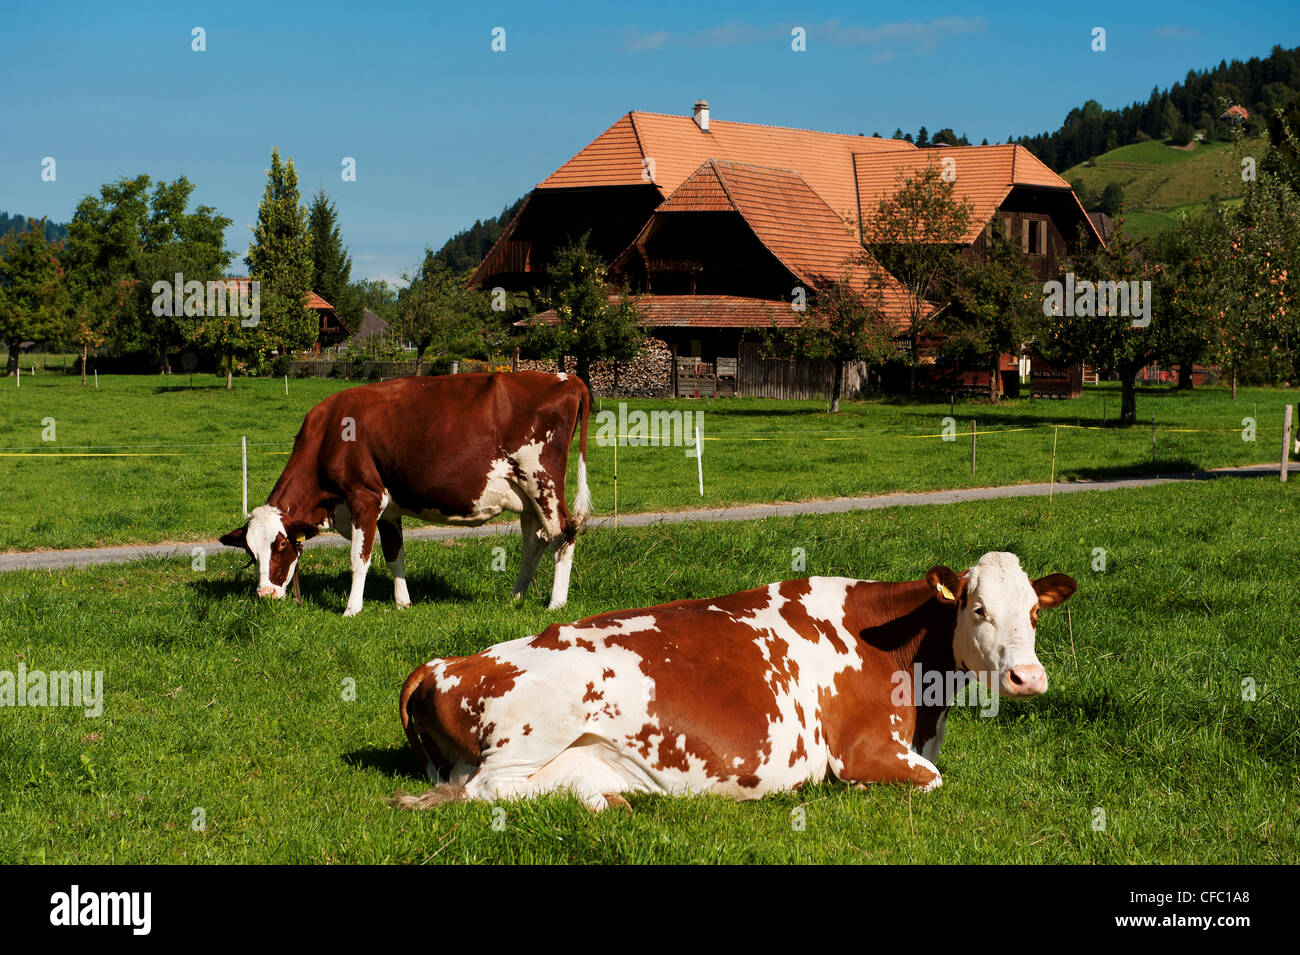 farm, farmhouse, farm house, farm stead, Emmental, Ey, canton Bern, cow, cattle, landscape, scenery, Langnau, dairy, dairy farmi Stock Photo